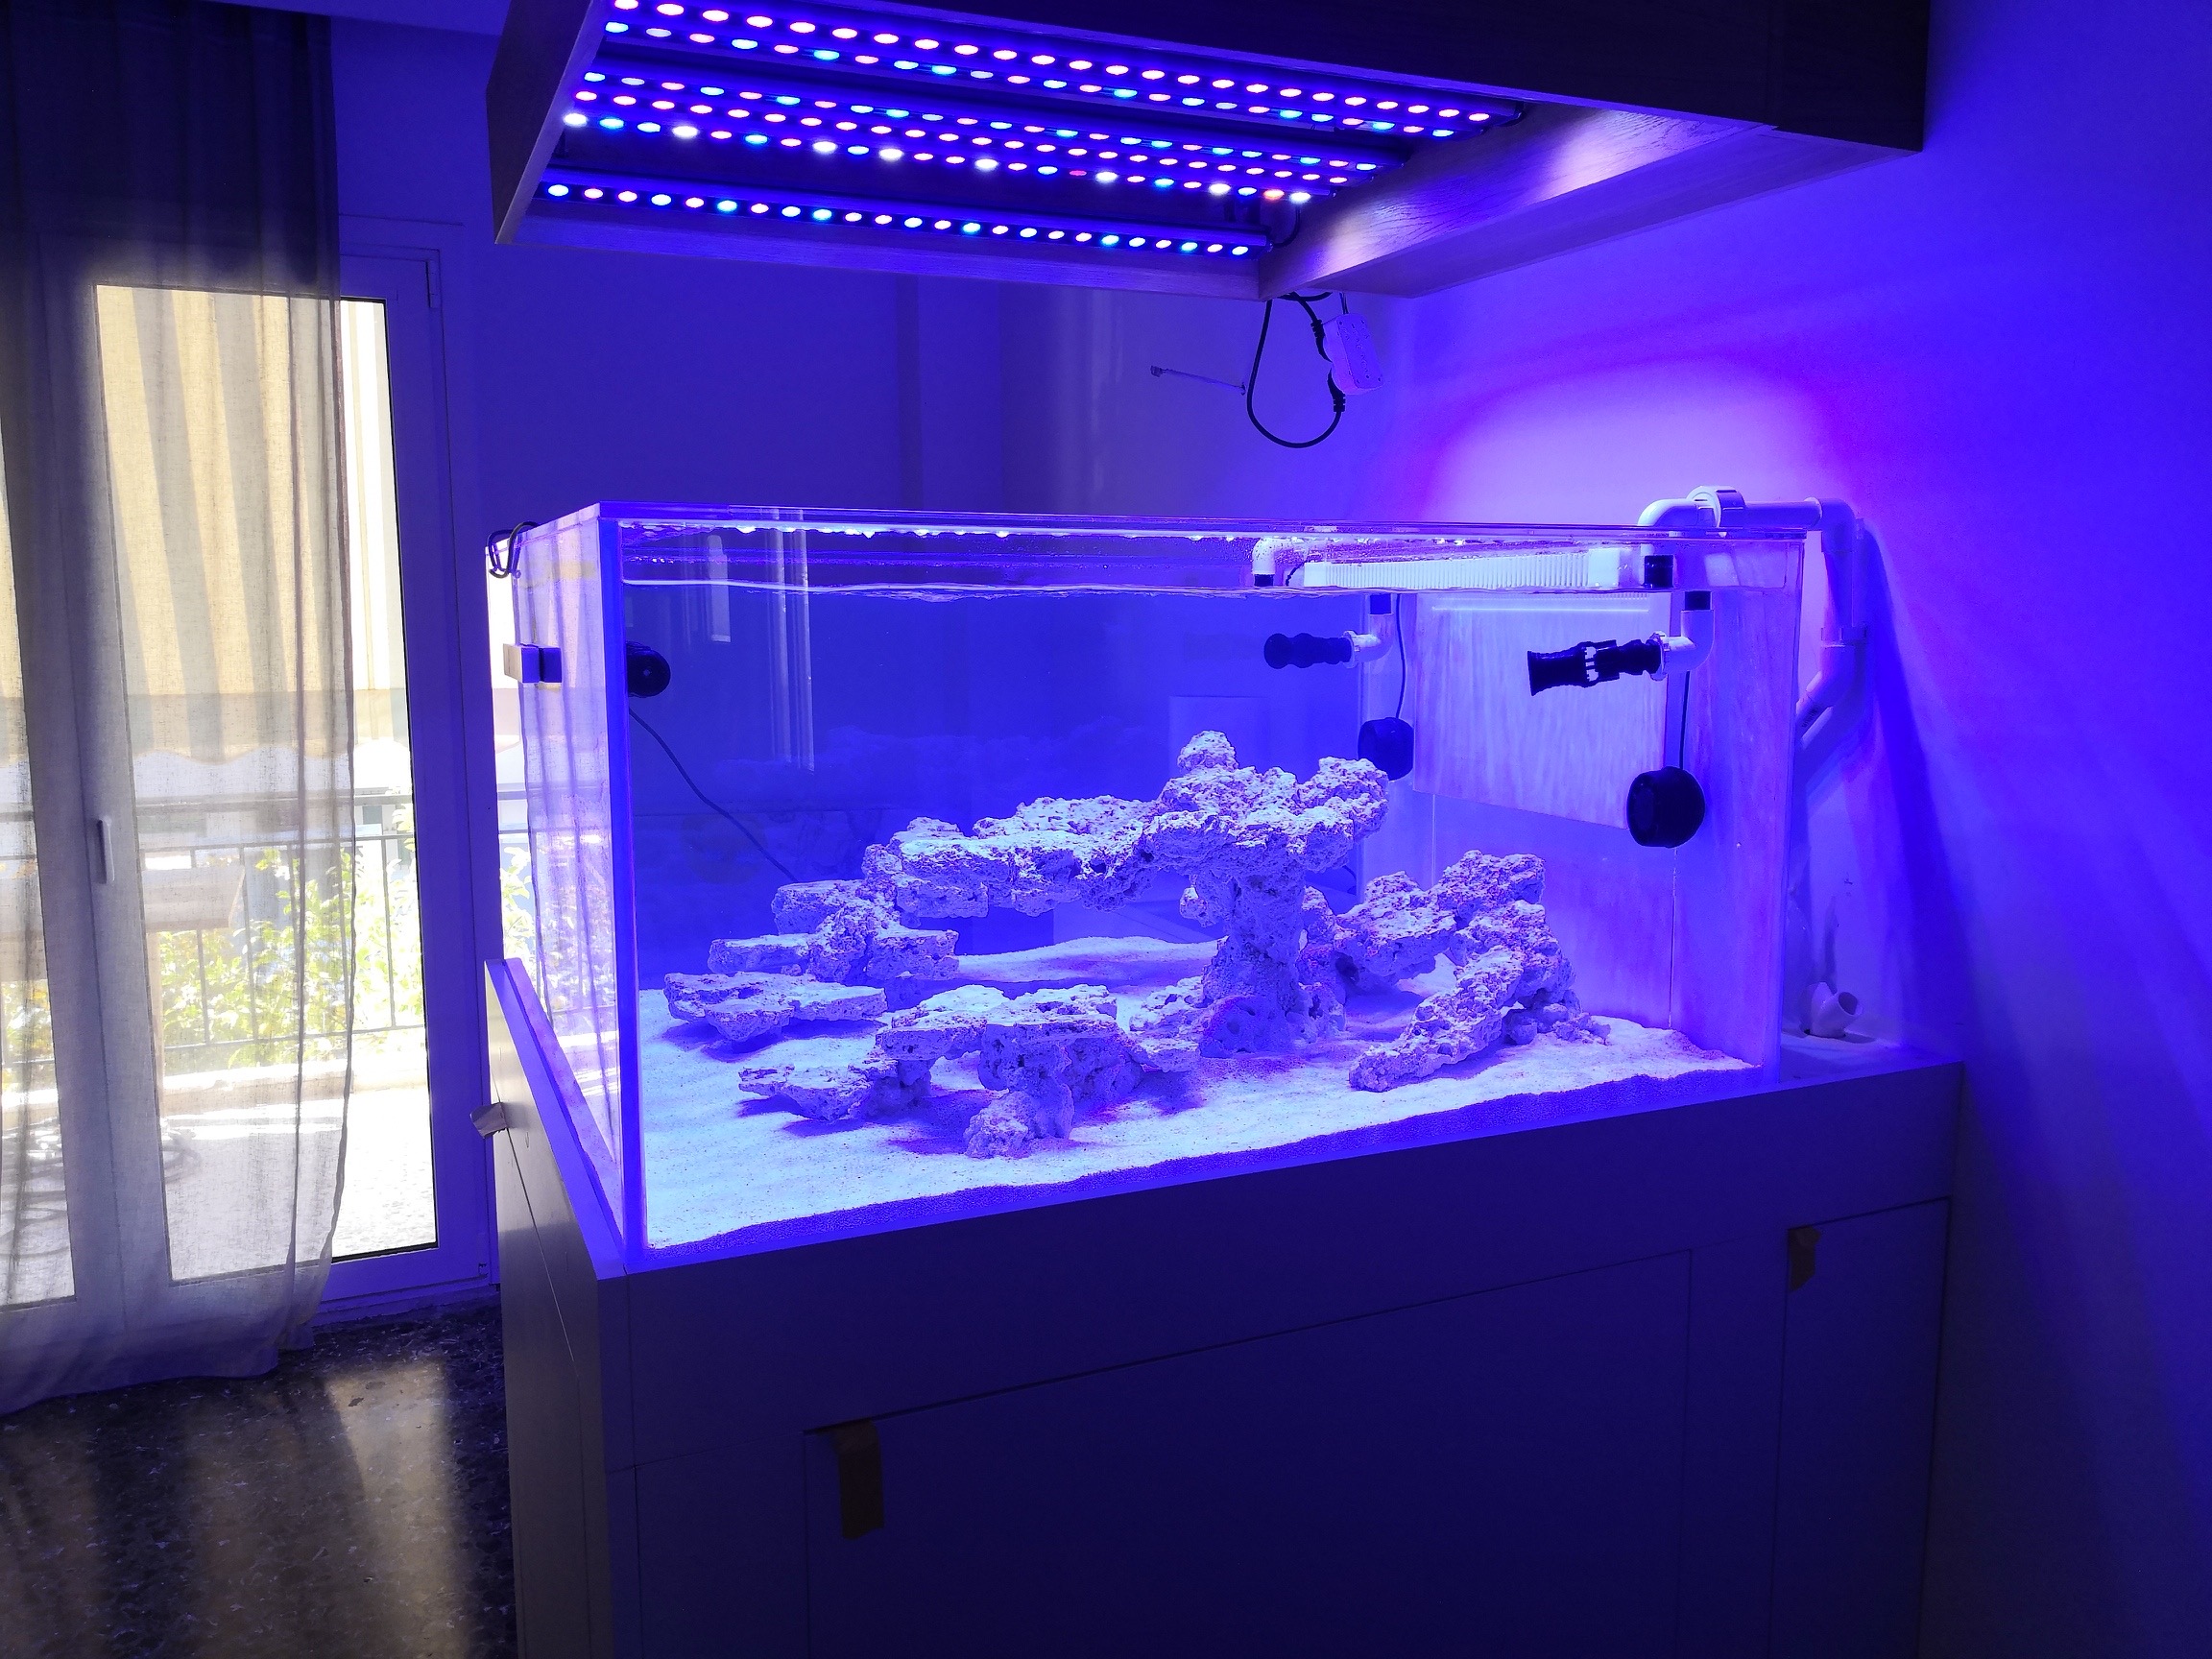 OR3-best-słonowodne-akwarium-LED-Bar